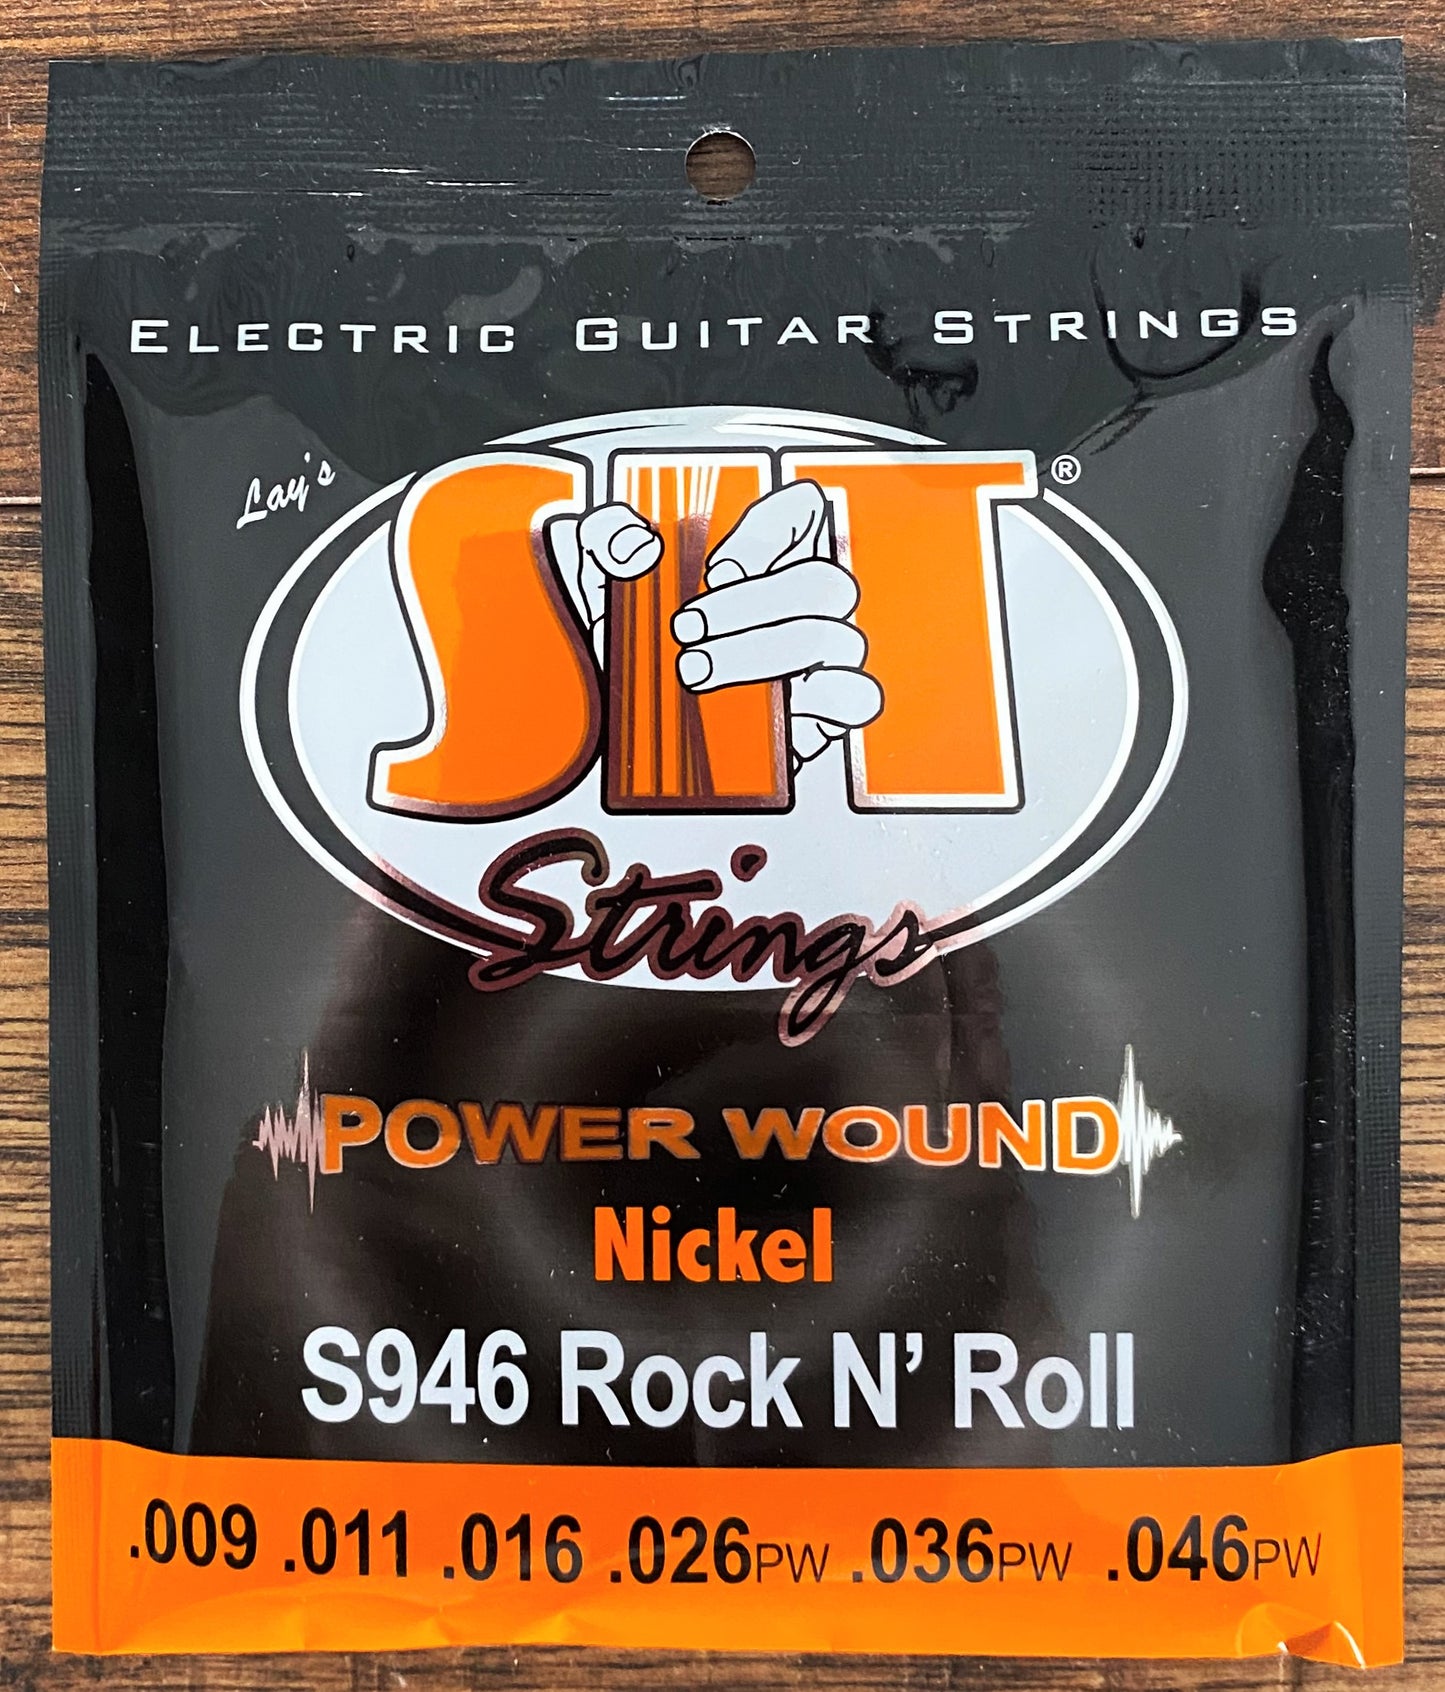 SIT Strings S946 Rock N' Roll Power Wound Nickel Electric Guitar Strings 3 Pack